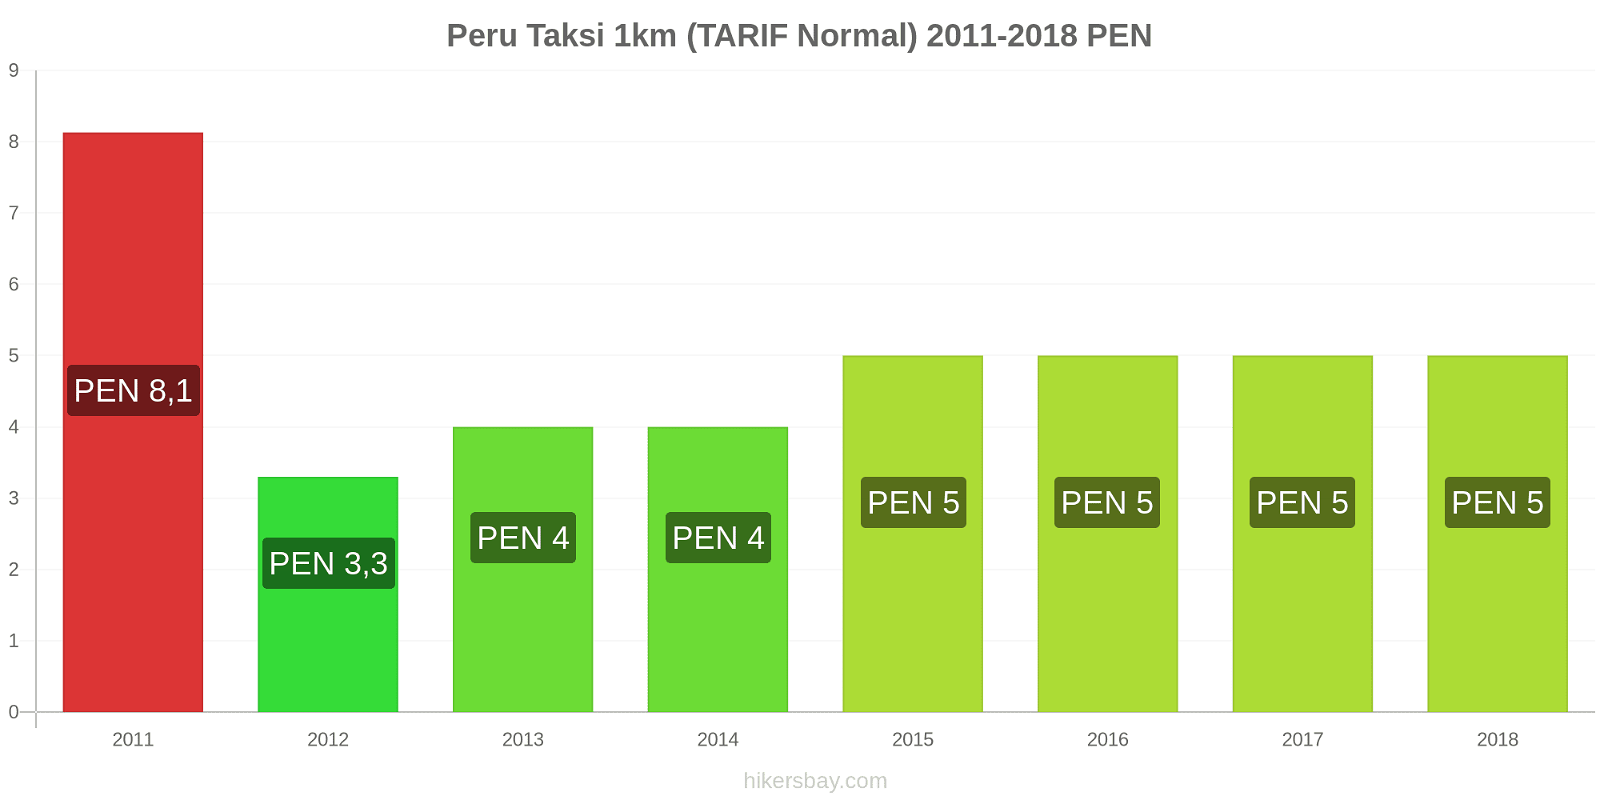 Peru perubahan harga Taksi 1km (Tarif Normal) hikersbay.com